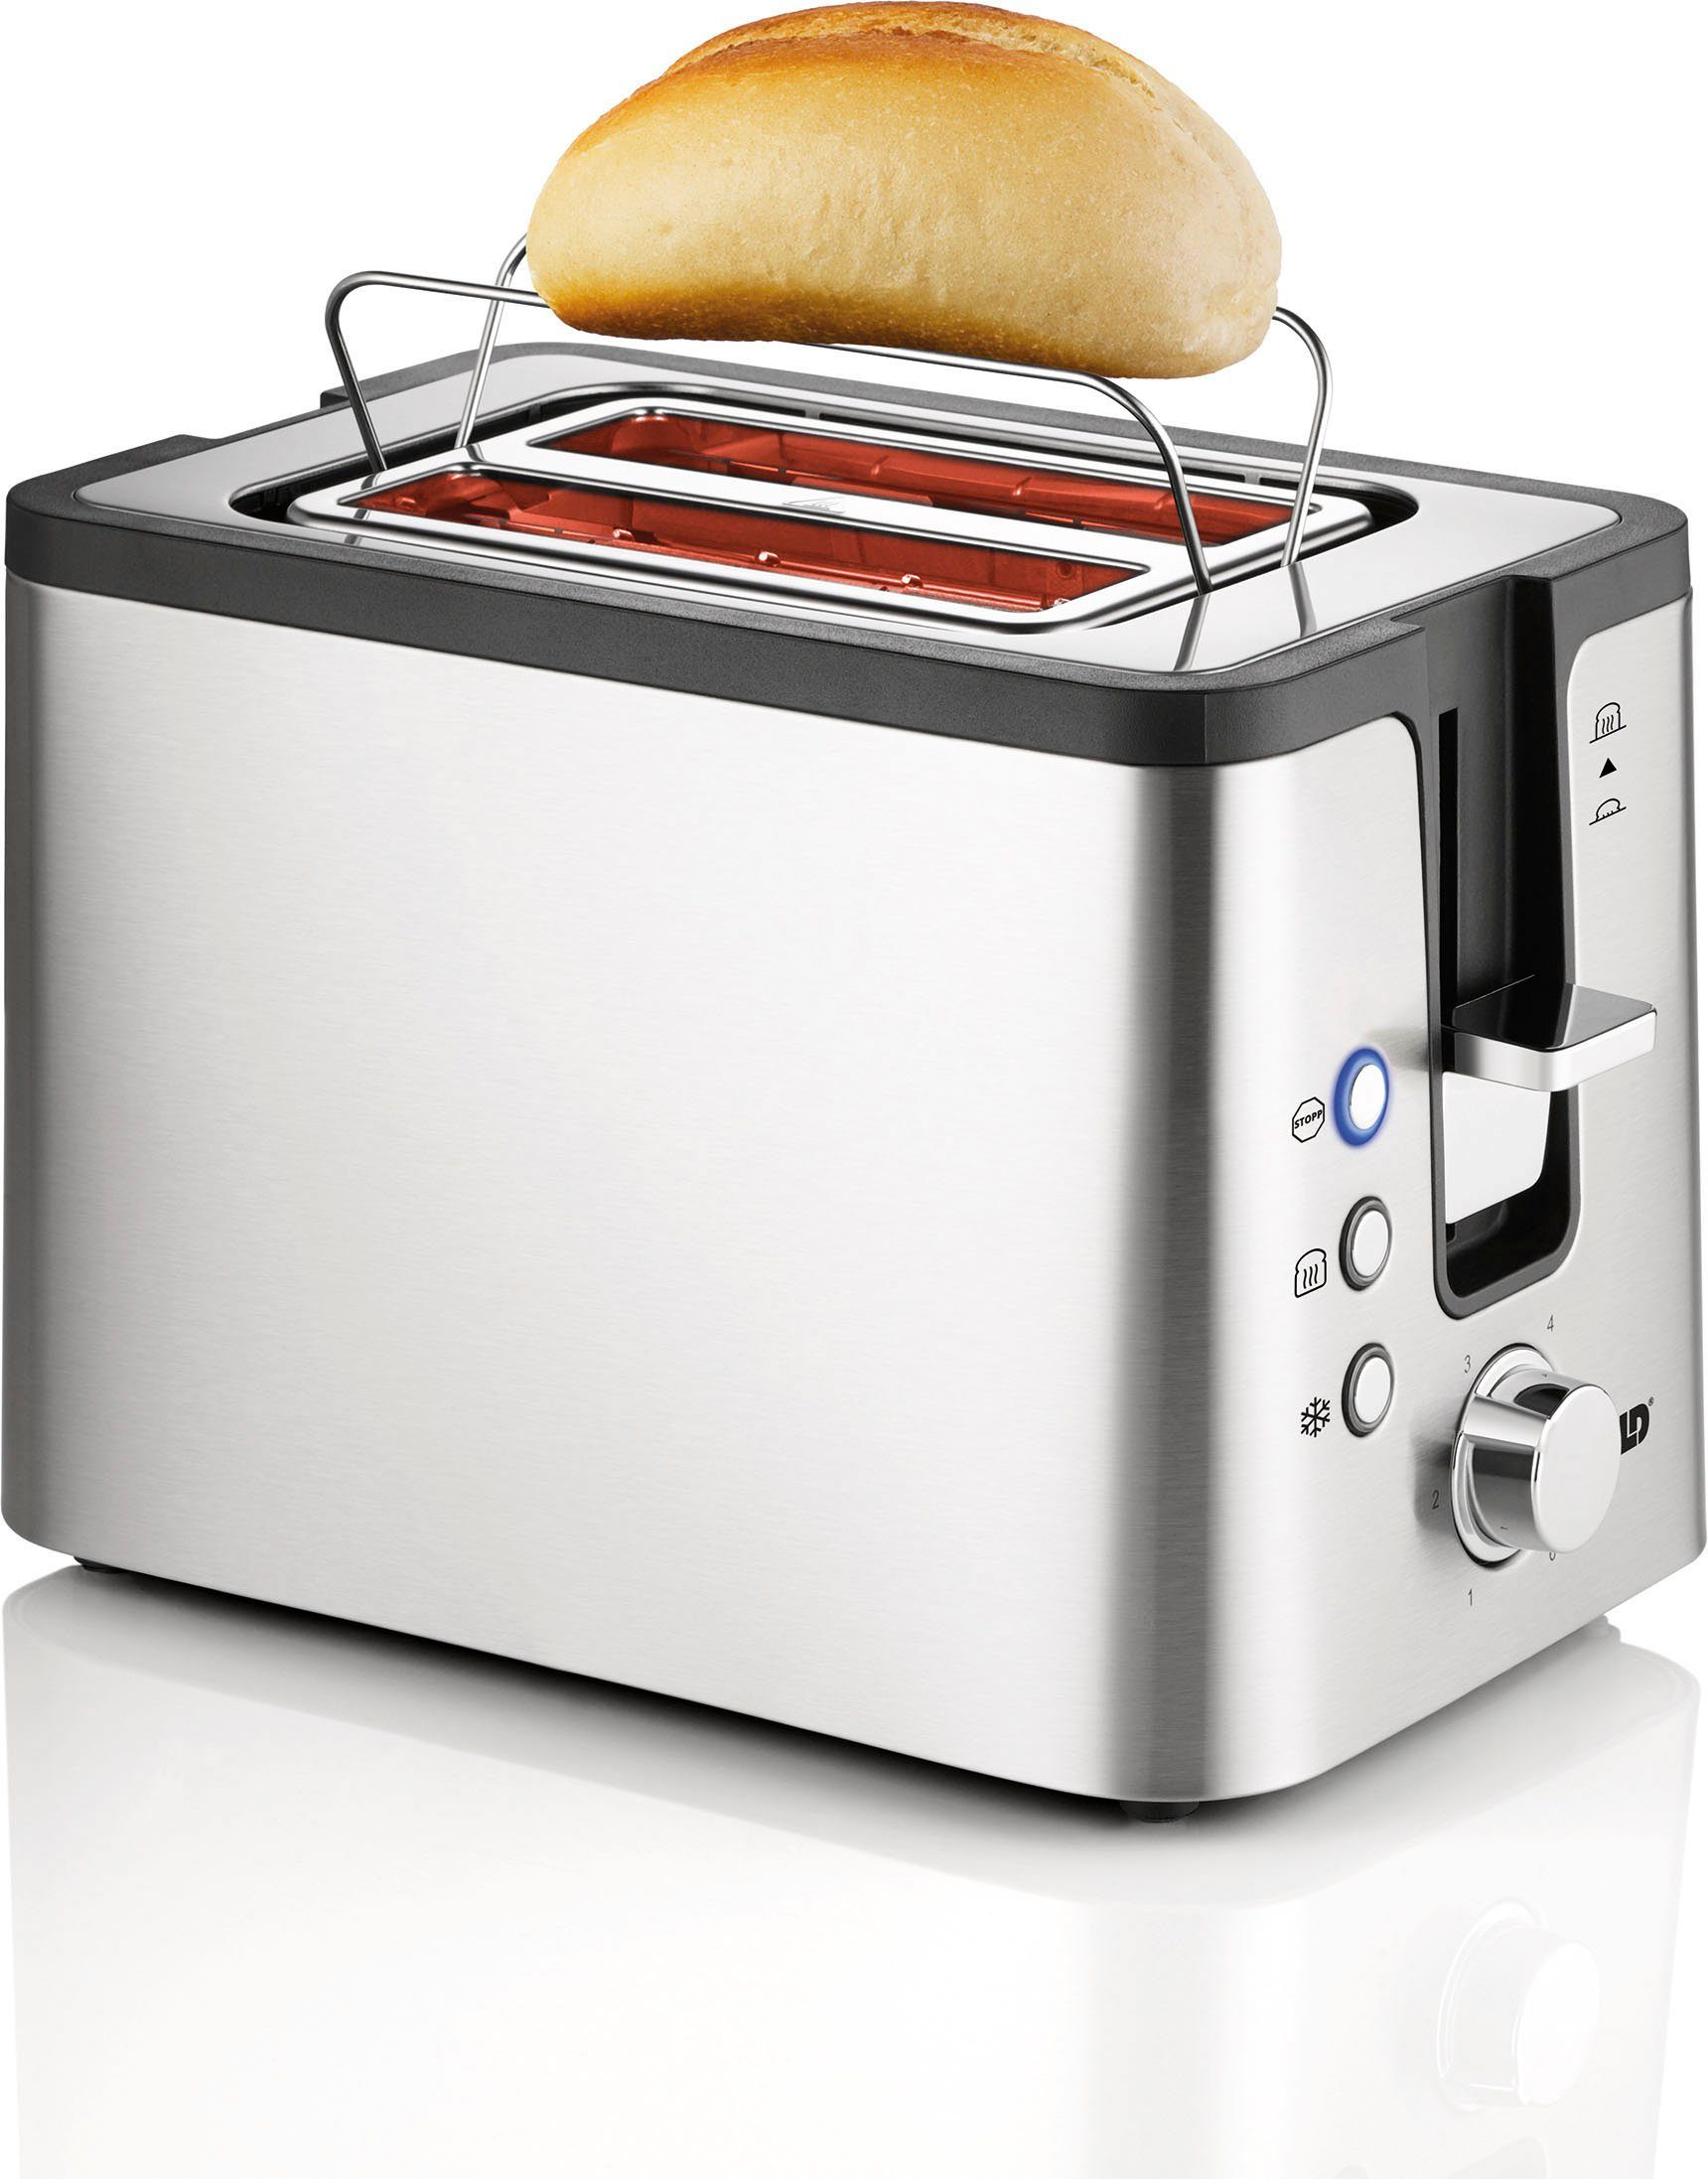 Unold Toaster 2er Kompakt 38215